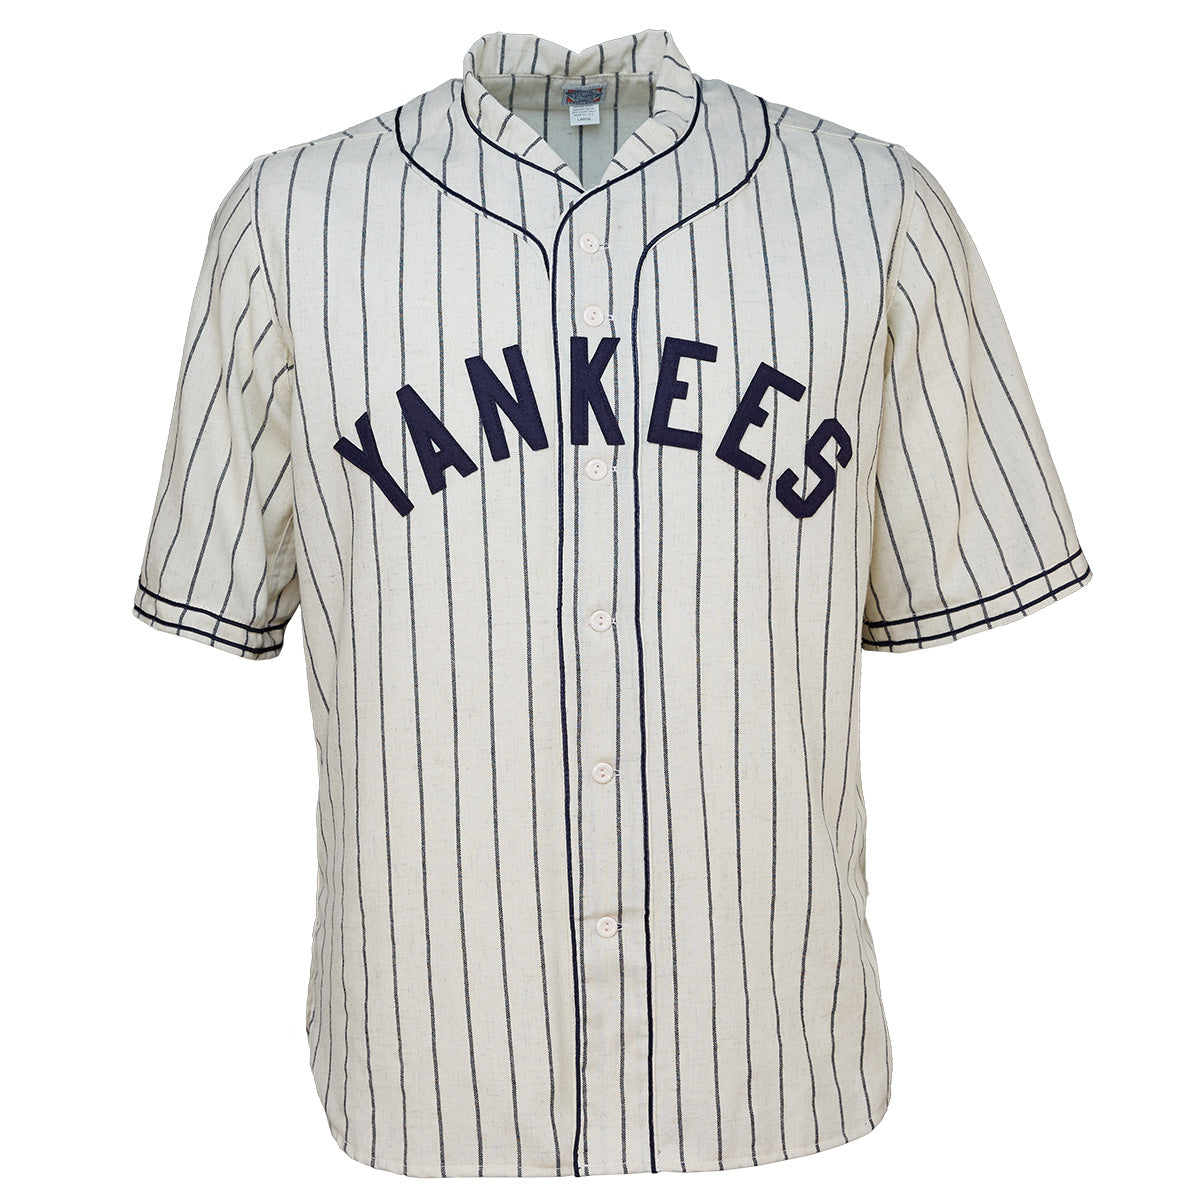 New York Yankees Black Fan Jerseys for sale